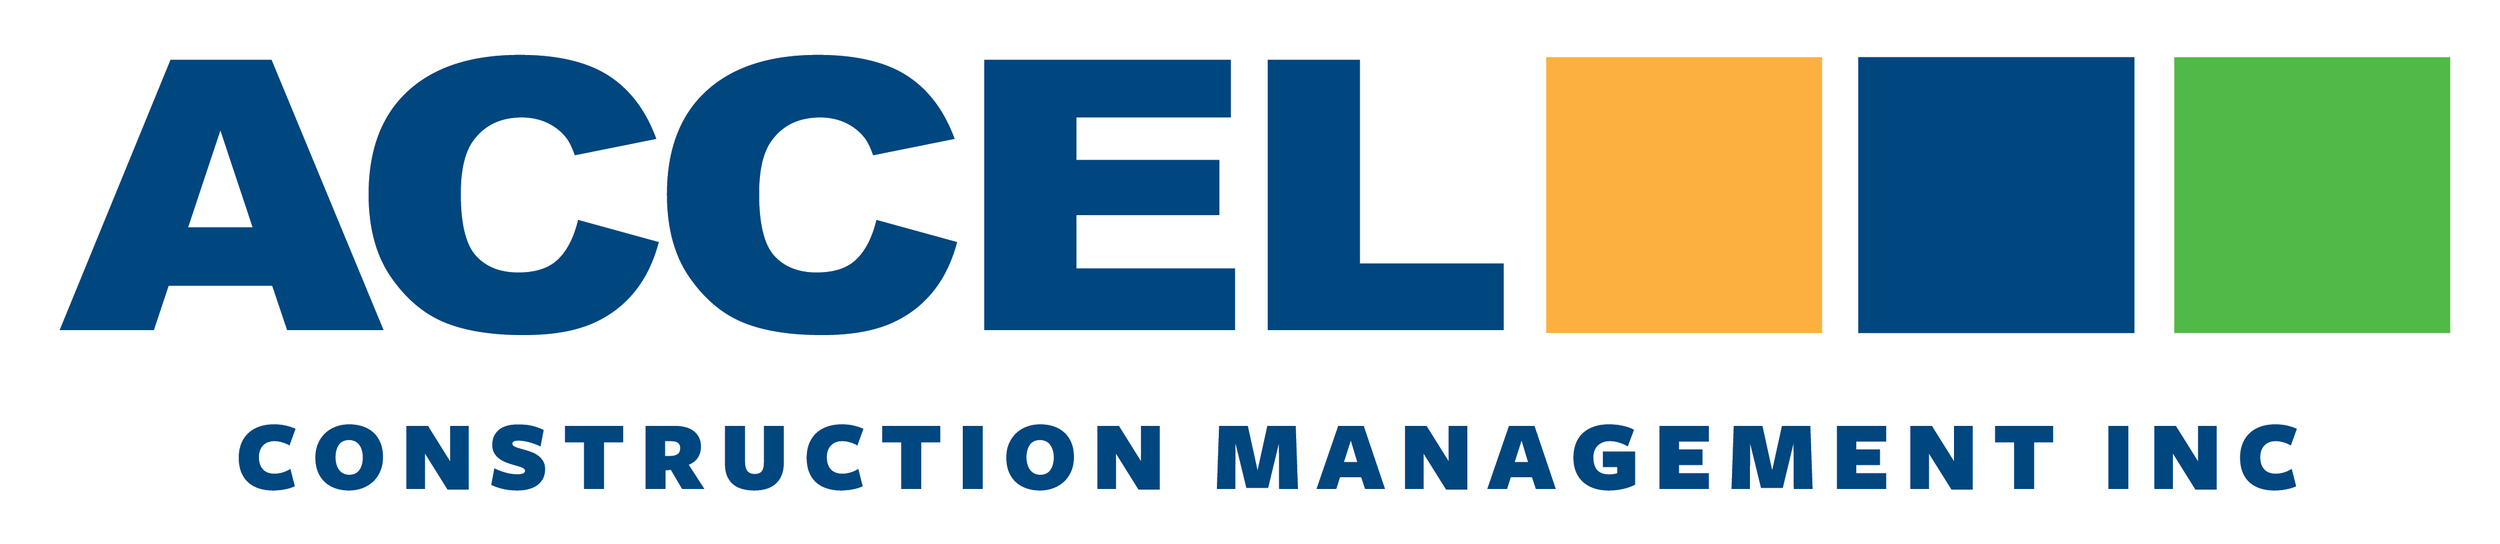 Accel Construction Management Inc.